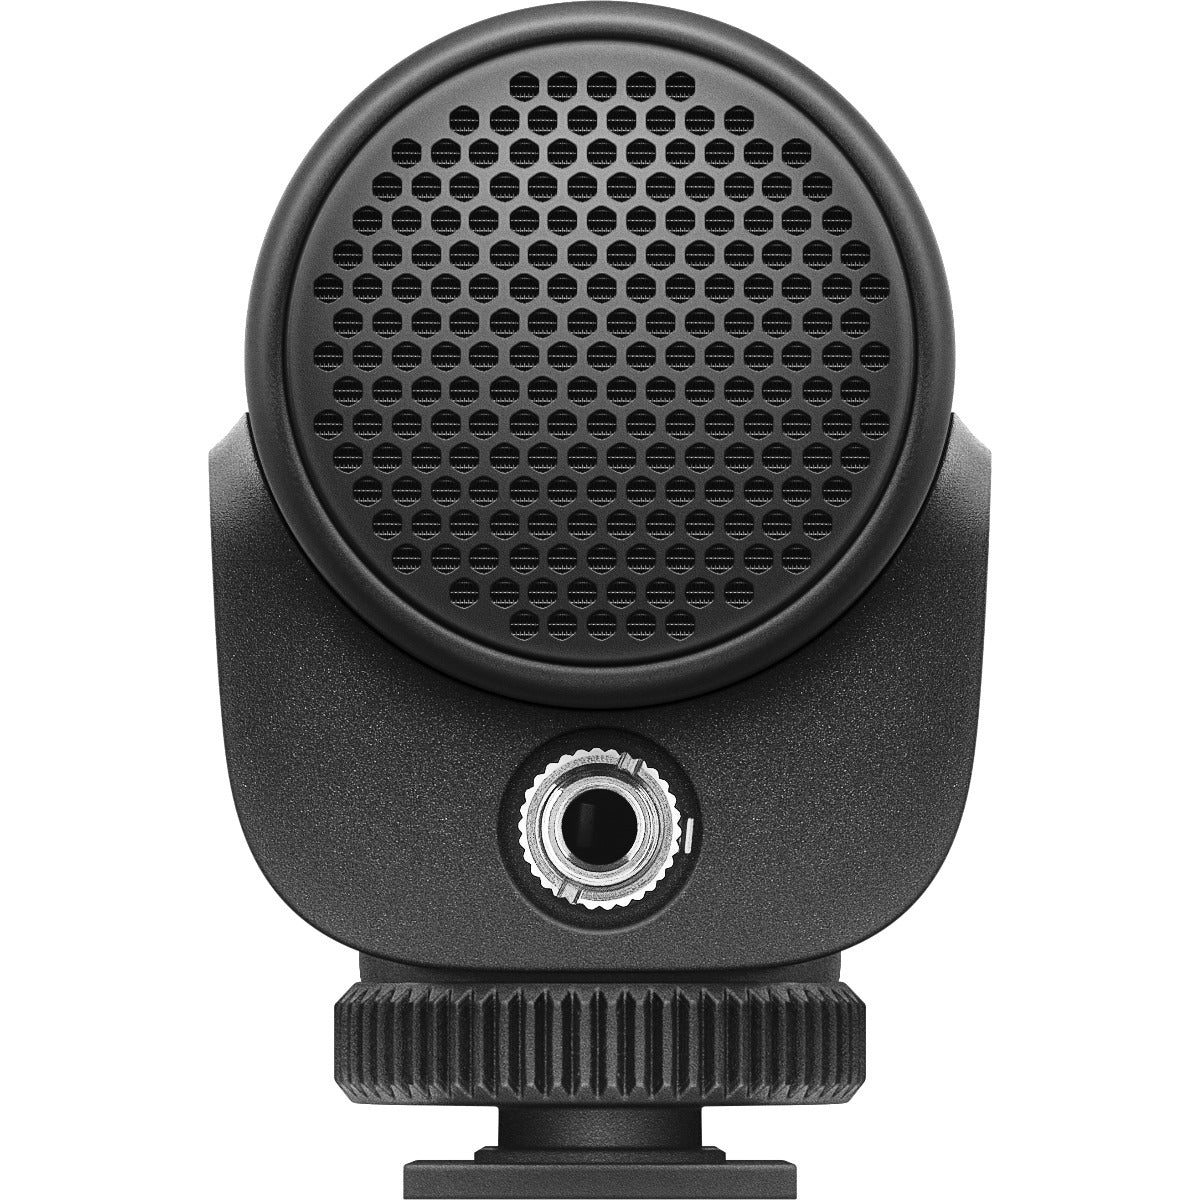 Sennheiser MKE 200 Directional Camera Microphone